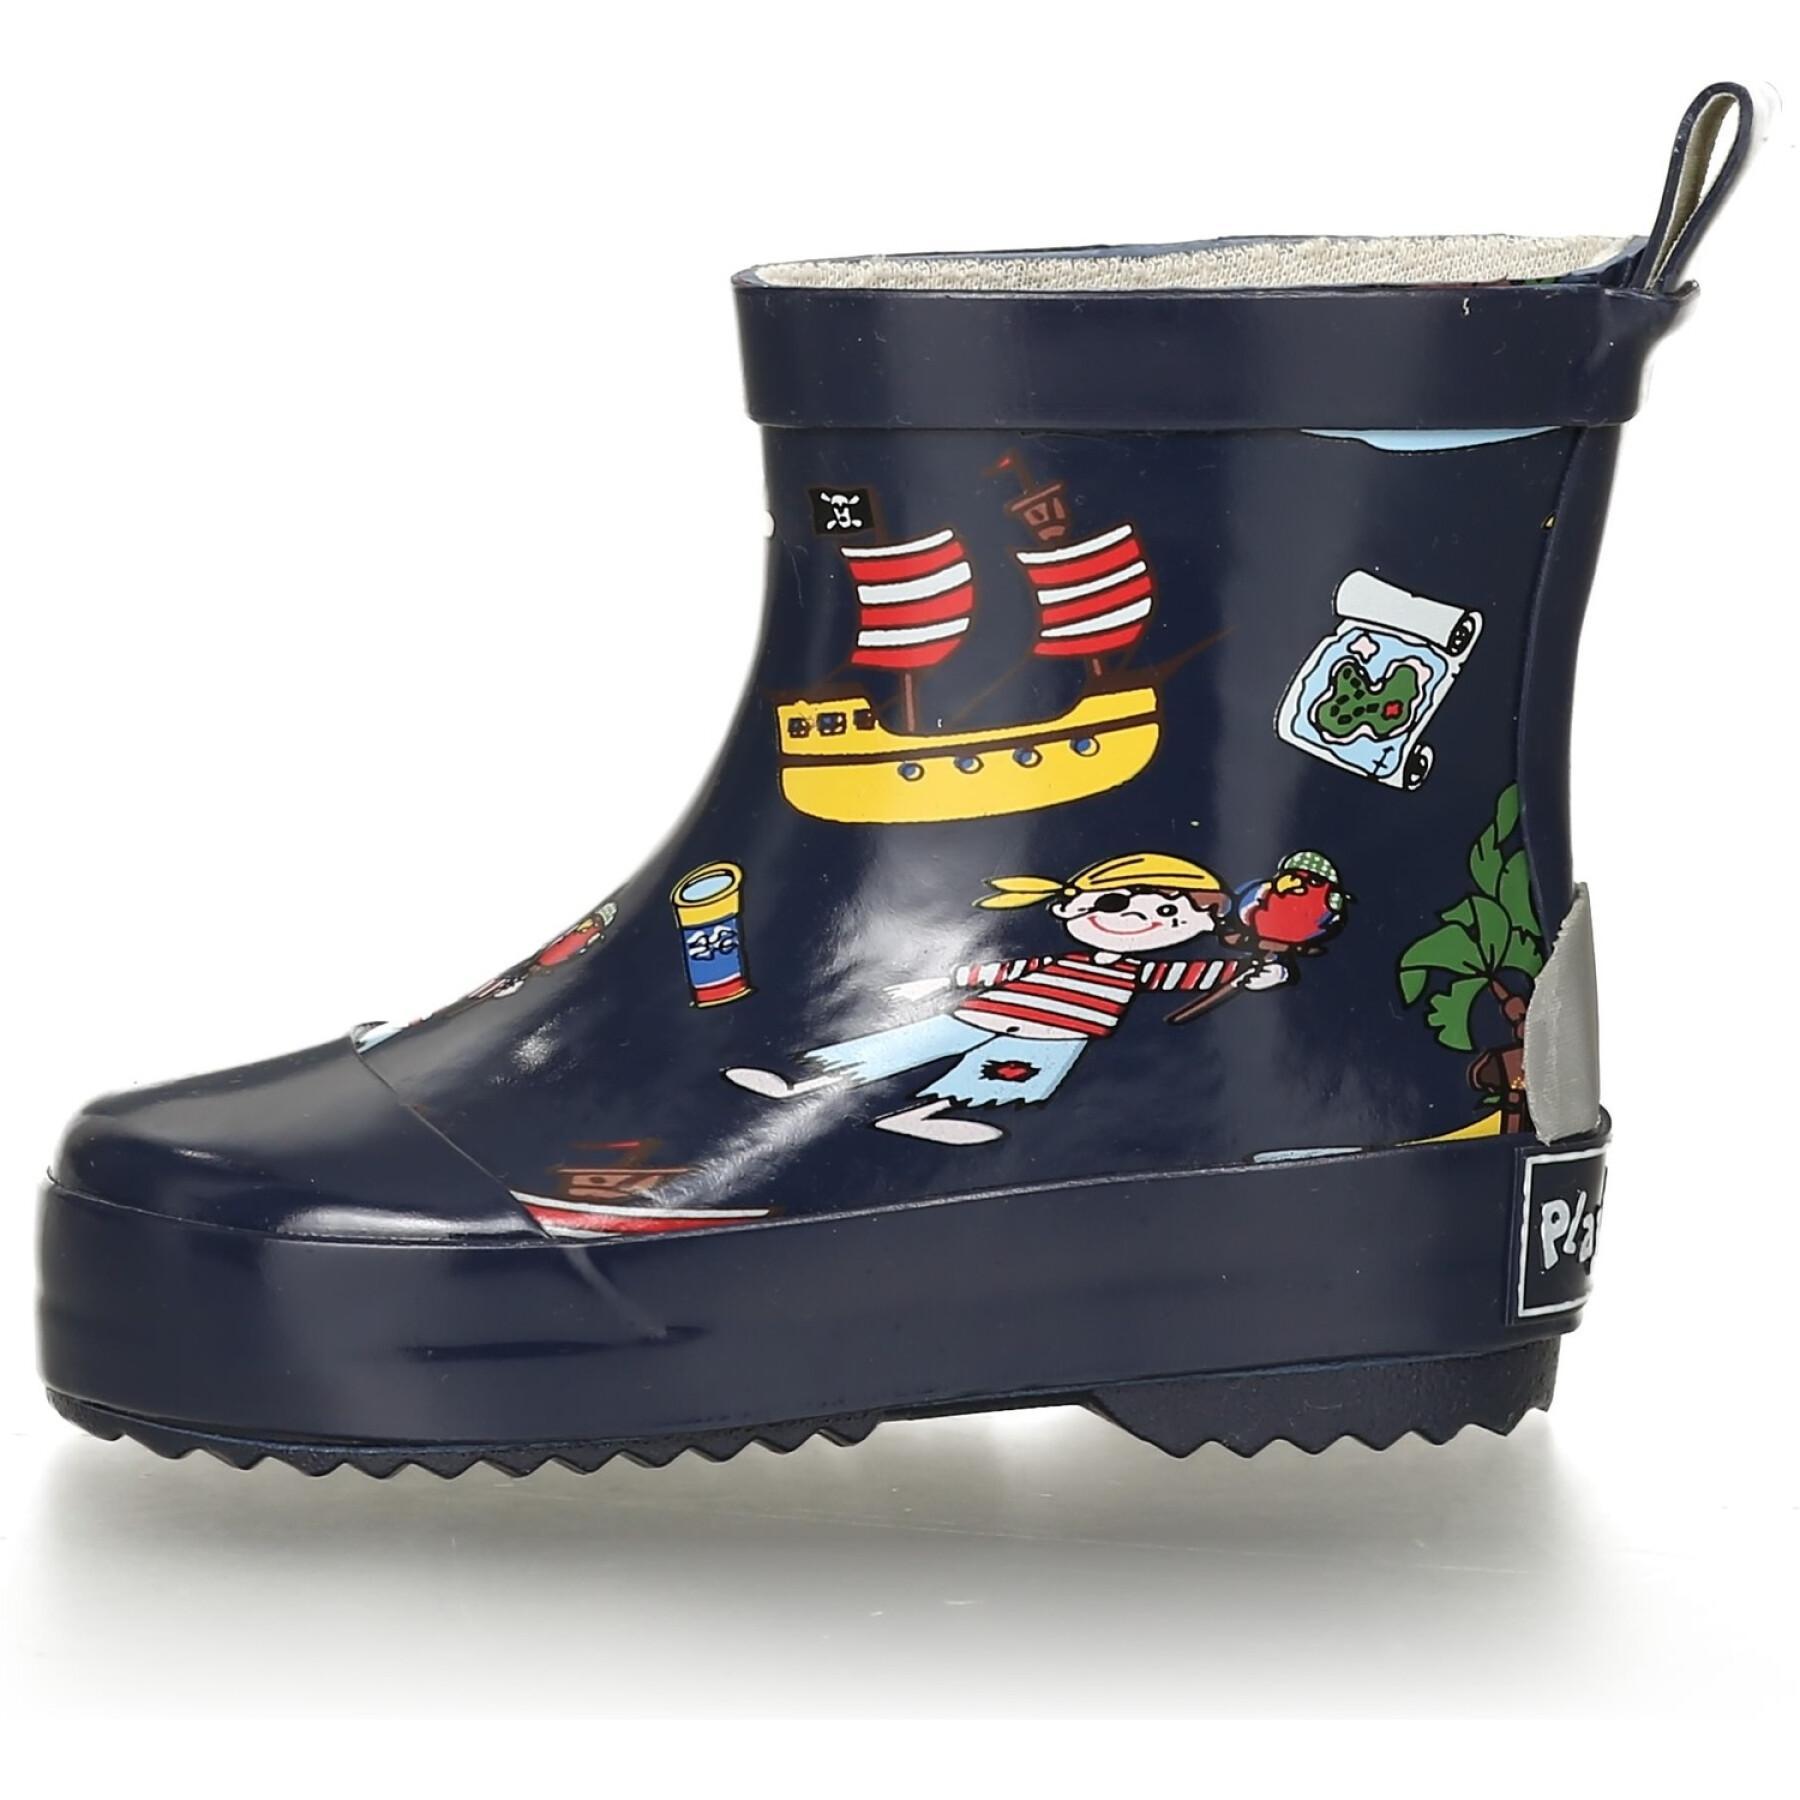 Stivaletti da pioggia in gomma per bambini Playshoes Low Pirate Island